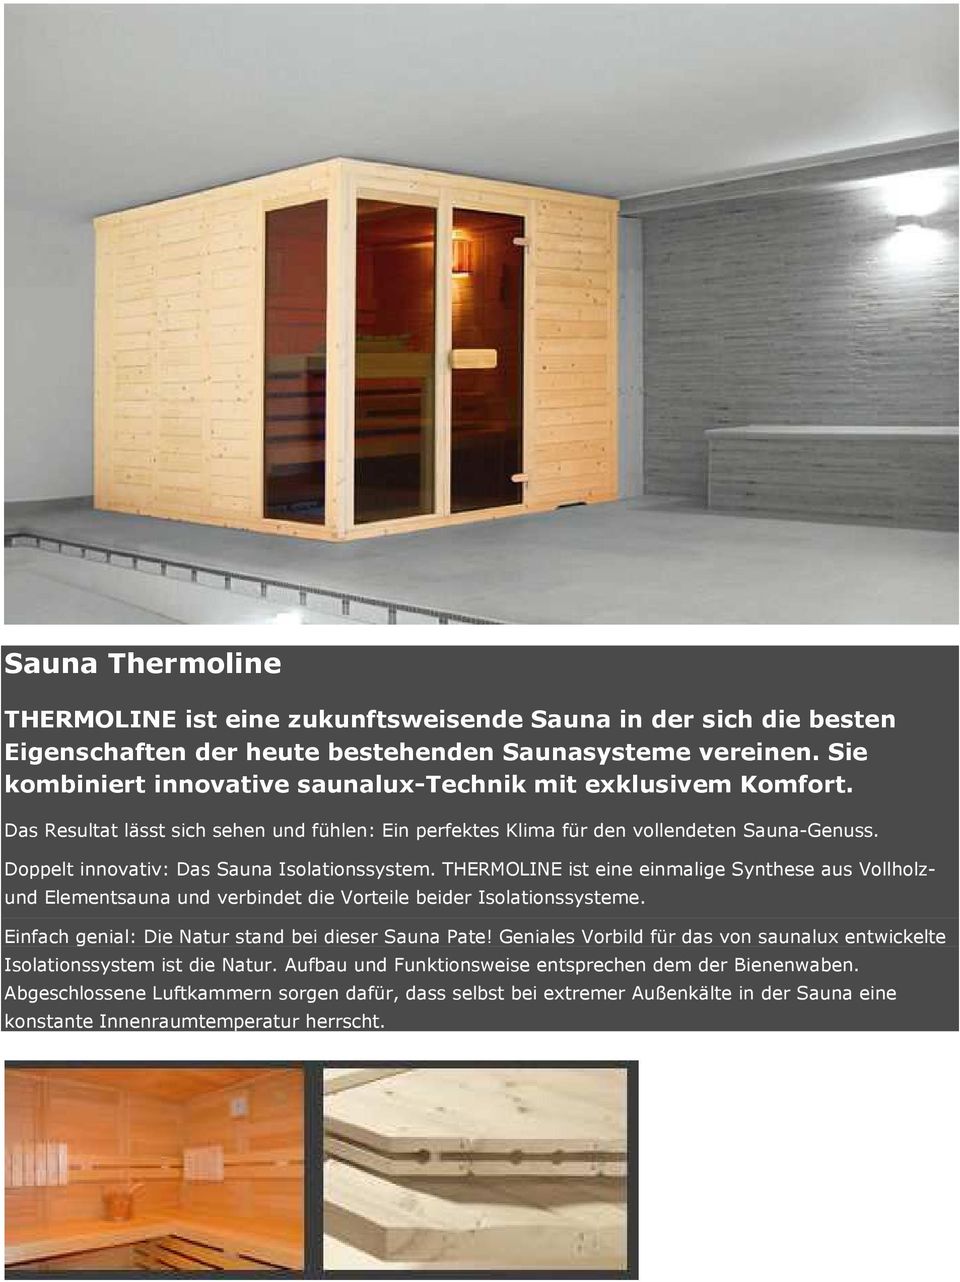 Doppelt innovativ: Das Sauna Isolationssystem. THERMOLINE ist eine einmalige Synthese aus Vollholz- und Elementsauna und verbindet die Vorteile beider Isolationssysteme.